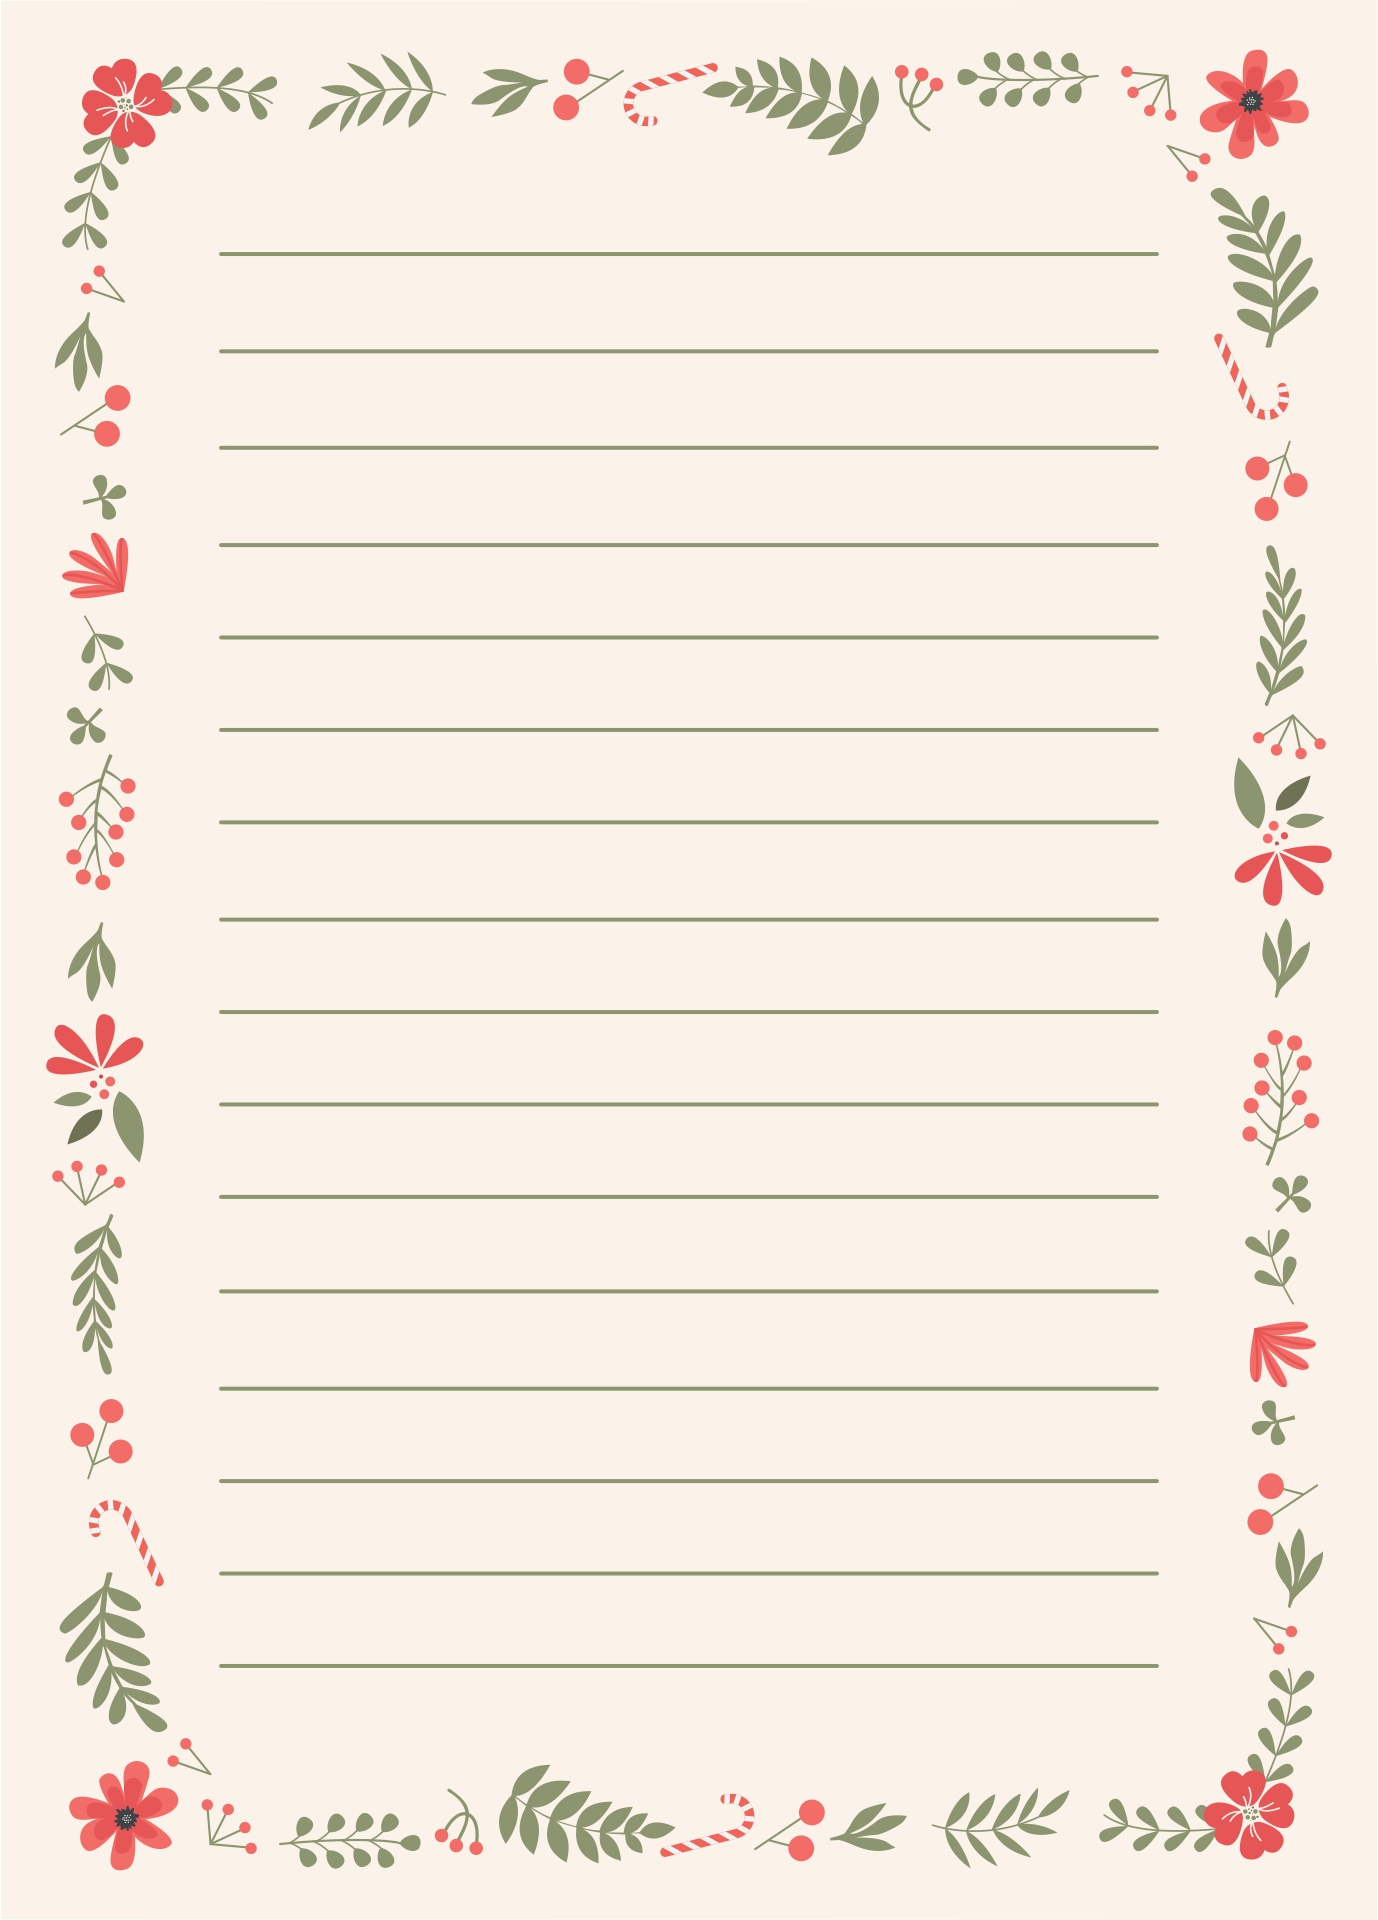 Printable Christmas Writing Paper Template_52133